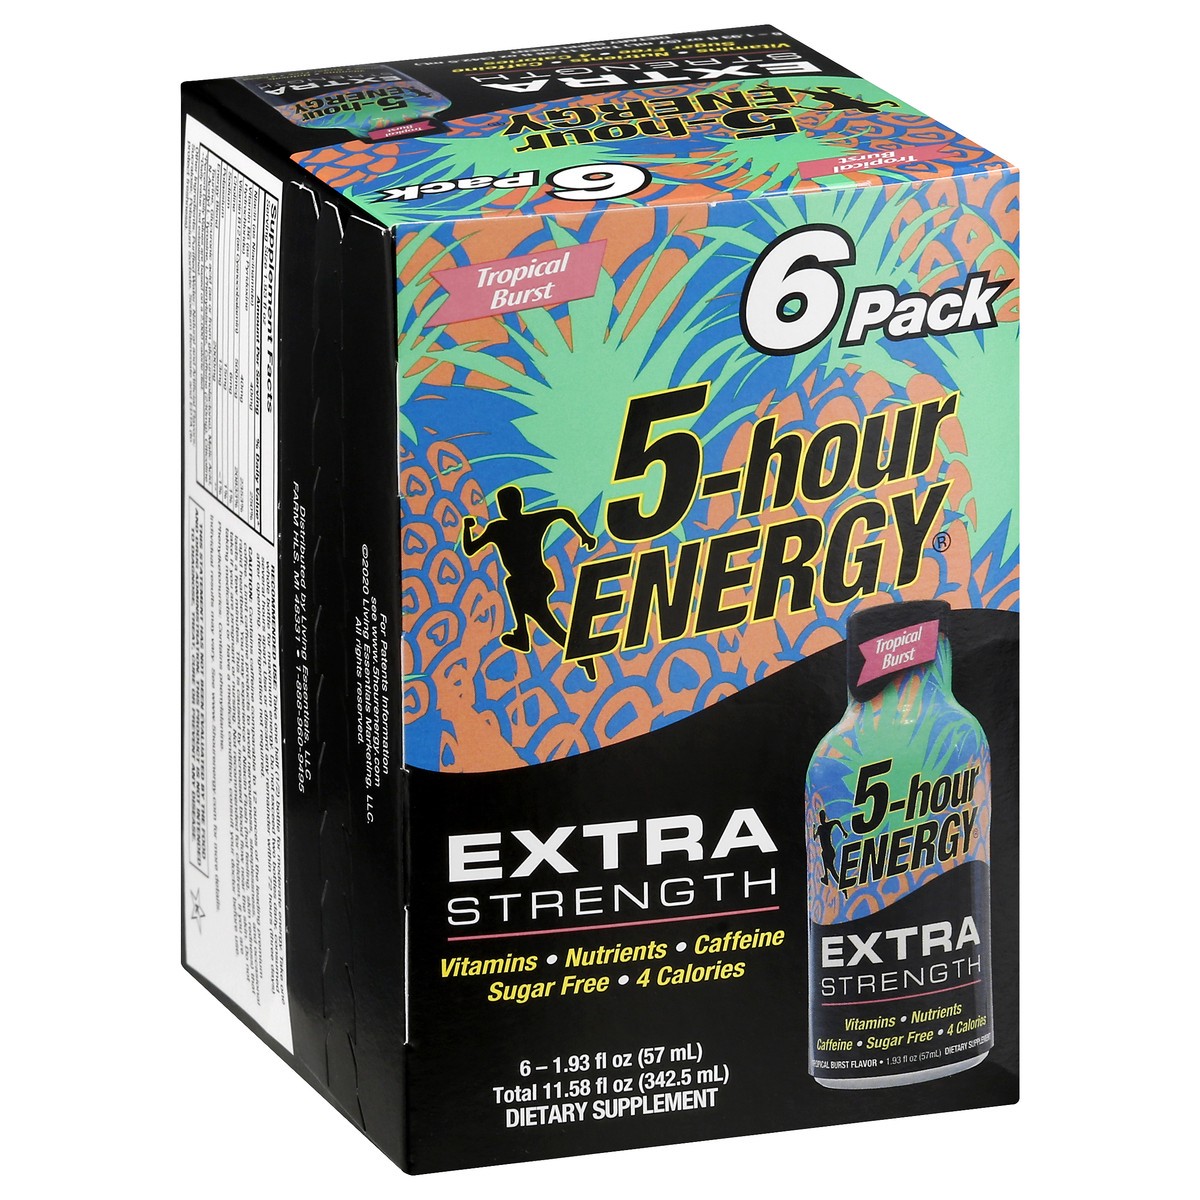 slide 9 of 9, 5-hour Energy, Extra Strength, Tropical Burst, 6 ct